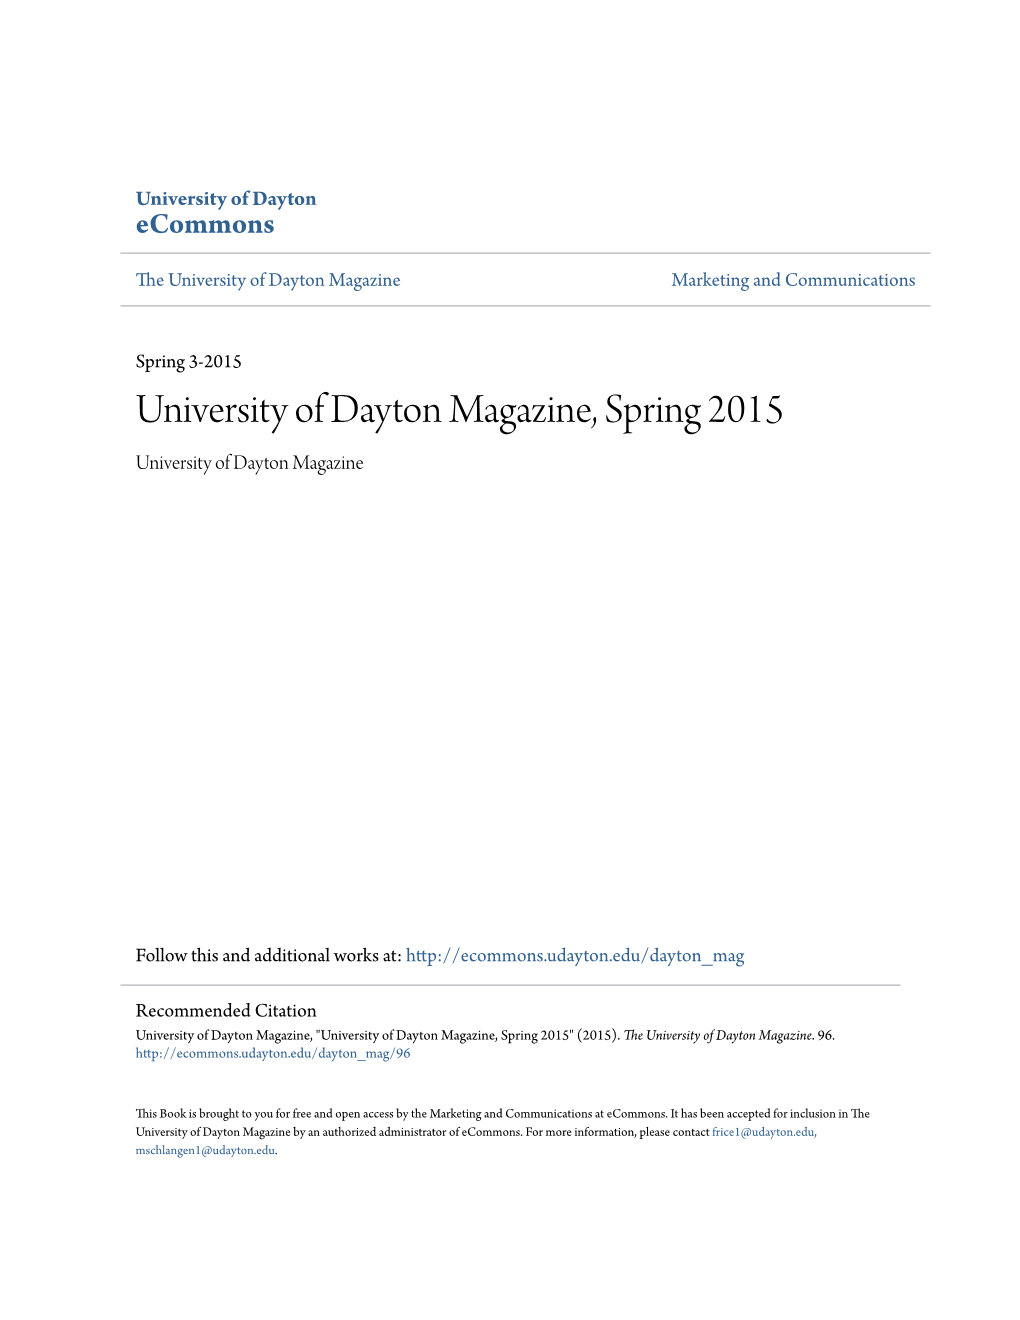 University of Dayton Magazine, Spring 2015 University of Dayton Magazine